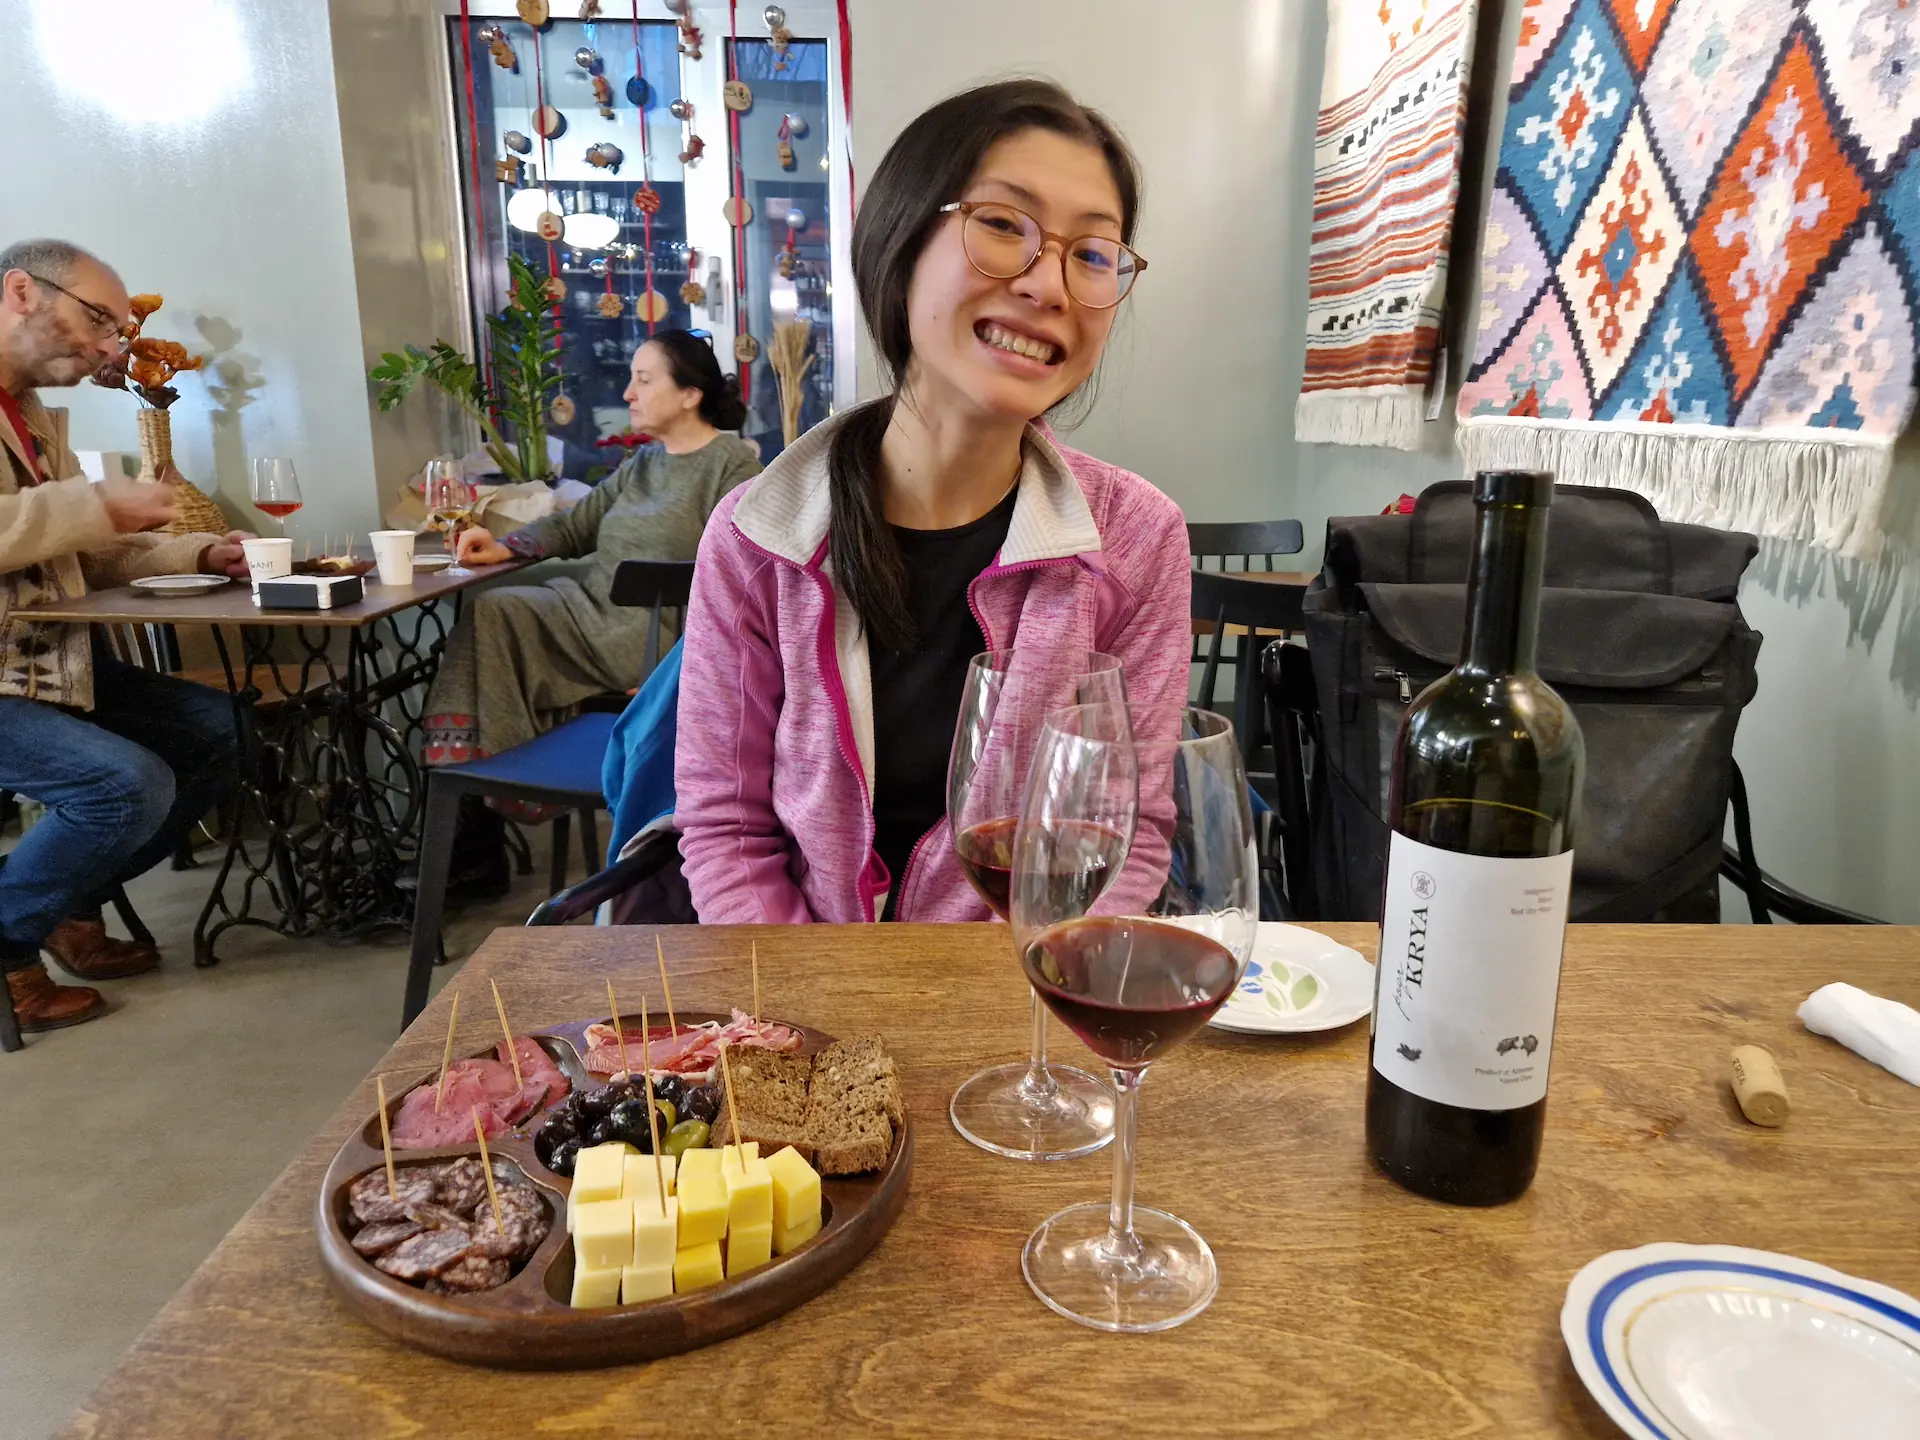 À une table du bar à vin, on déguste un verre de vin rouge arménien avec une planche de charcuteries et fromages locaux. Clara fait un grand sourire (légèrement forcé) à la caméra.